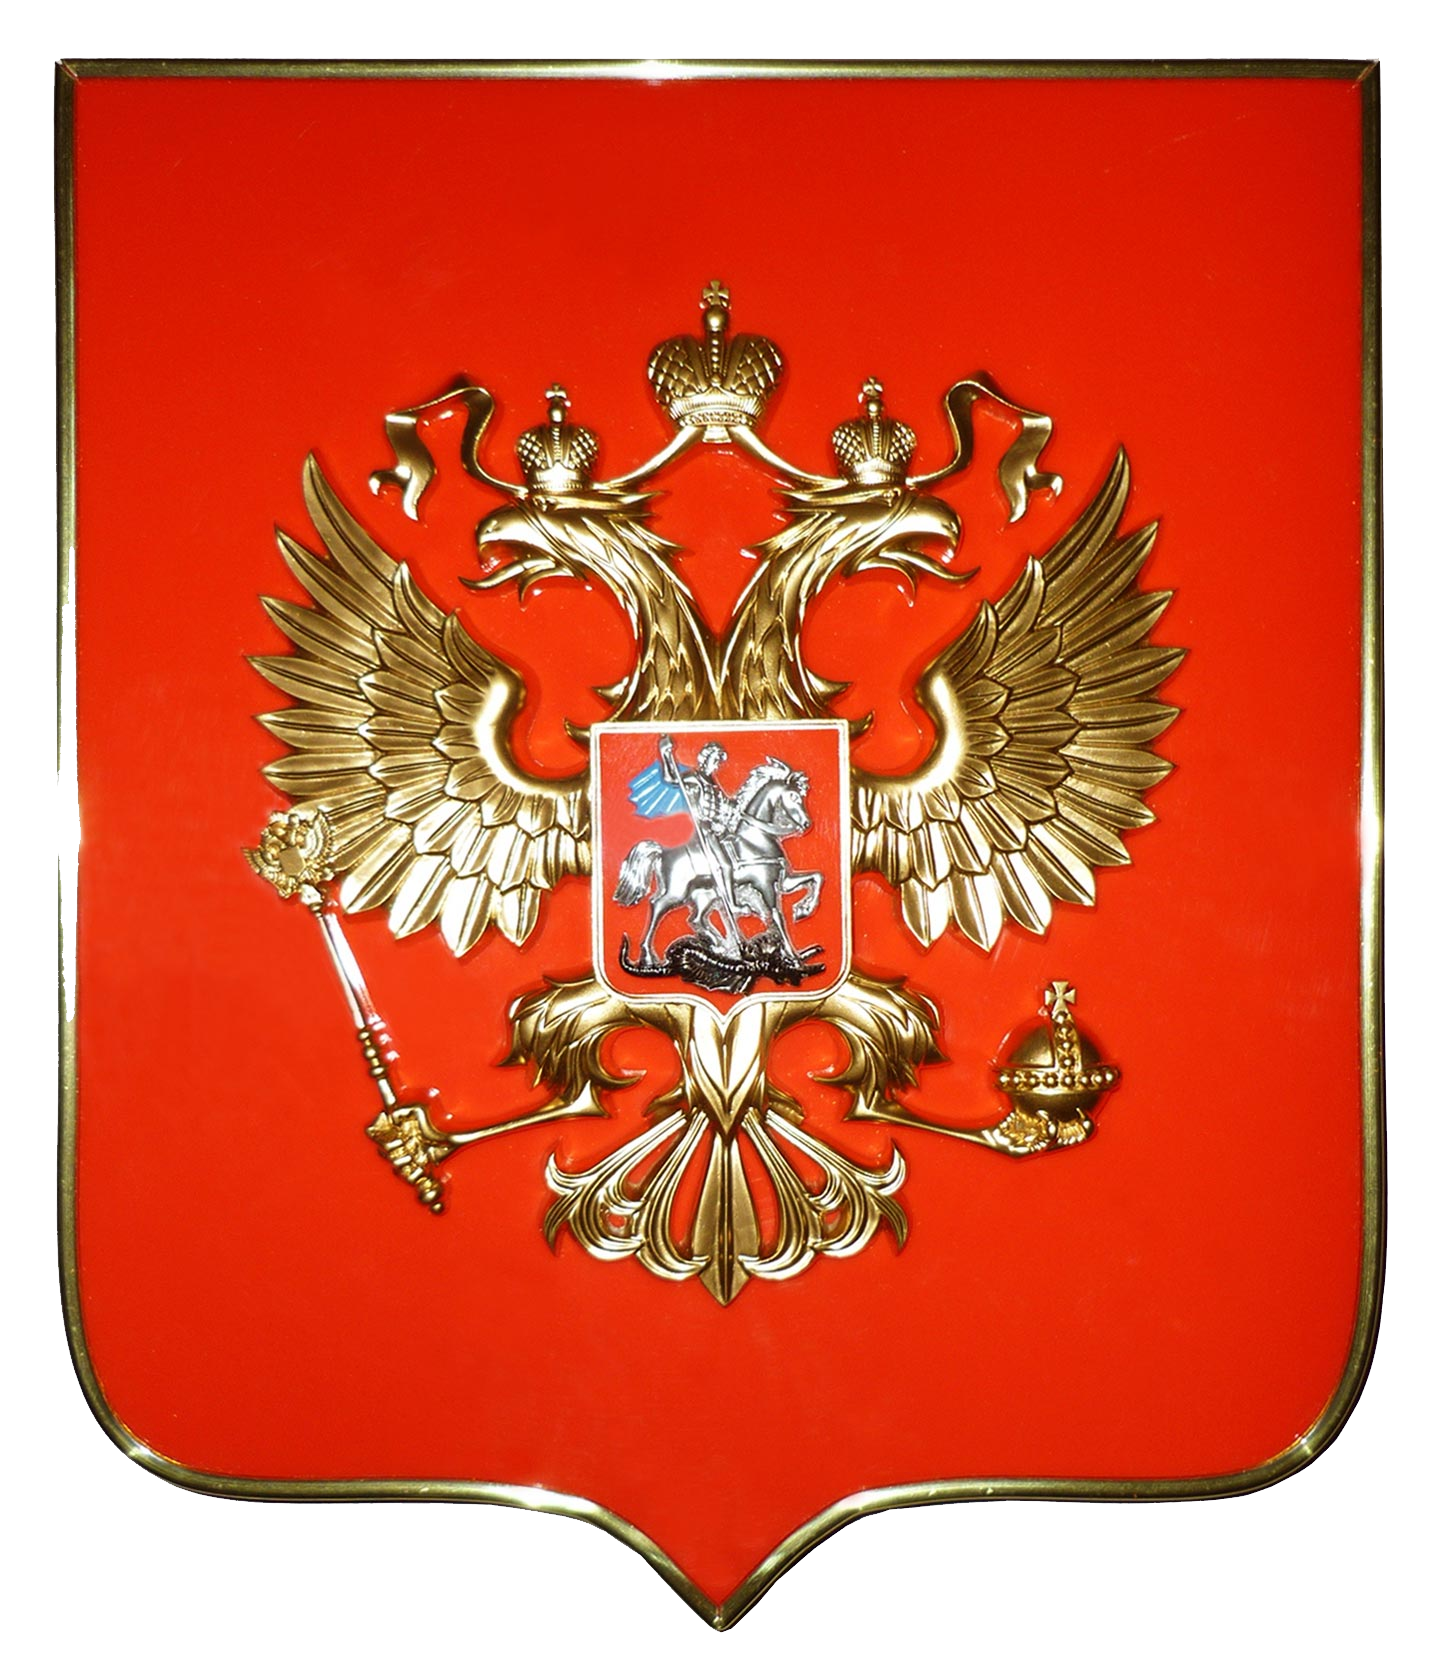 Nationales Emblem Russlands